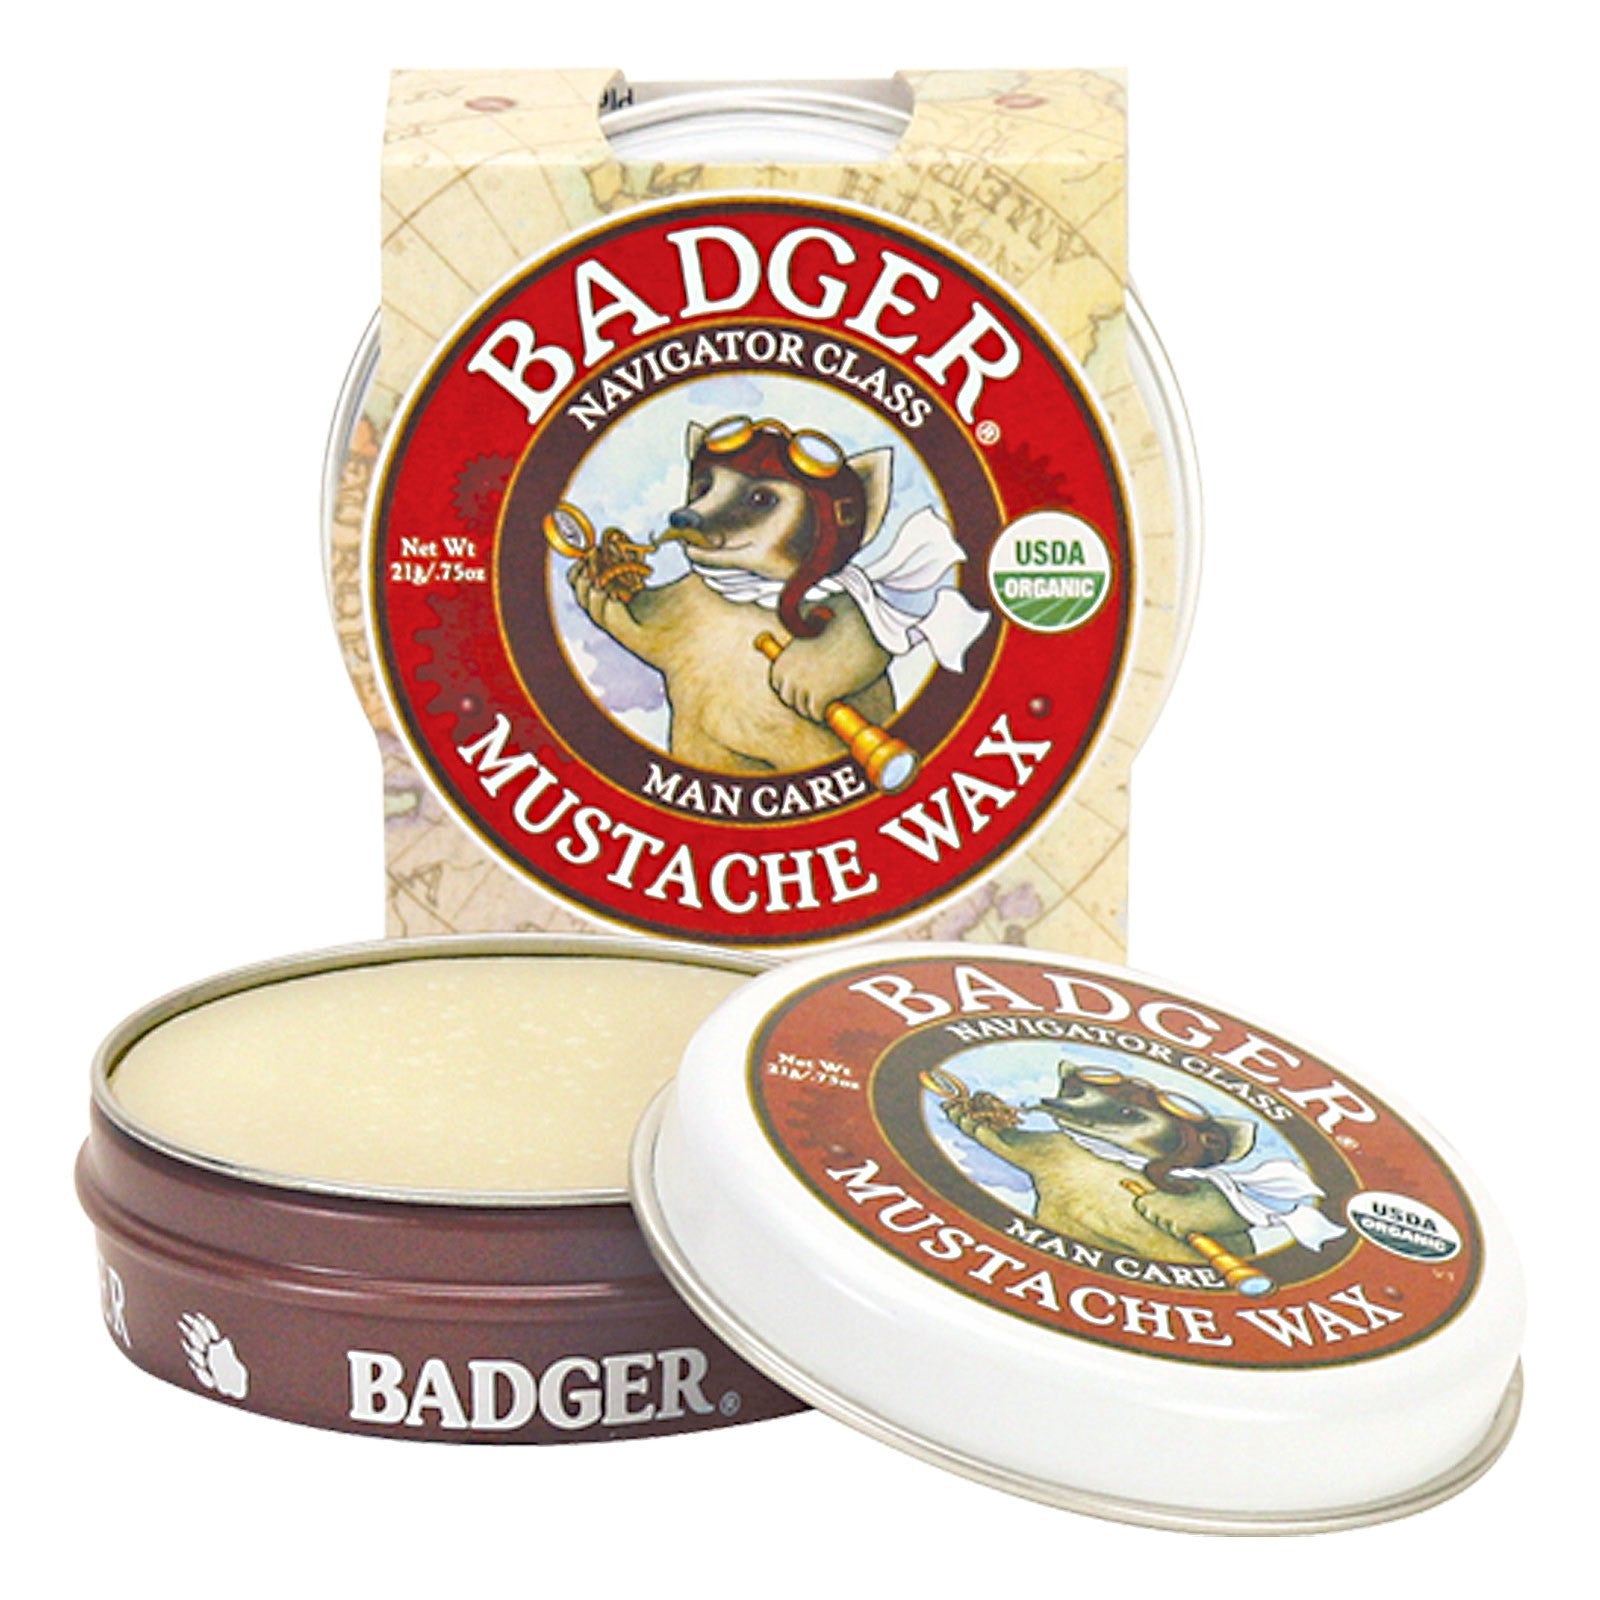 Badger - Mustache Wax Natural